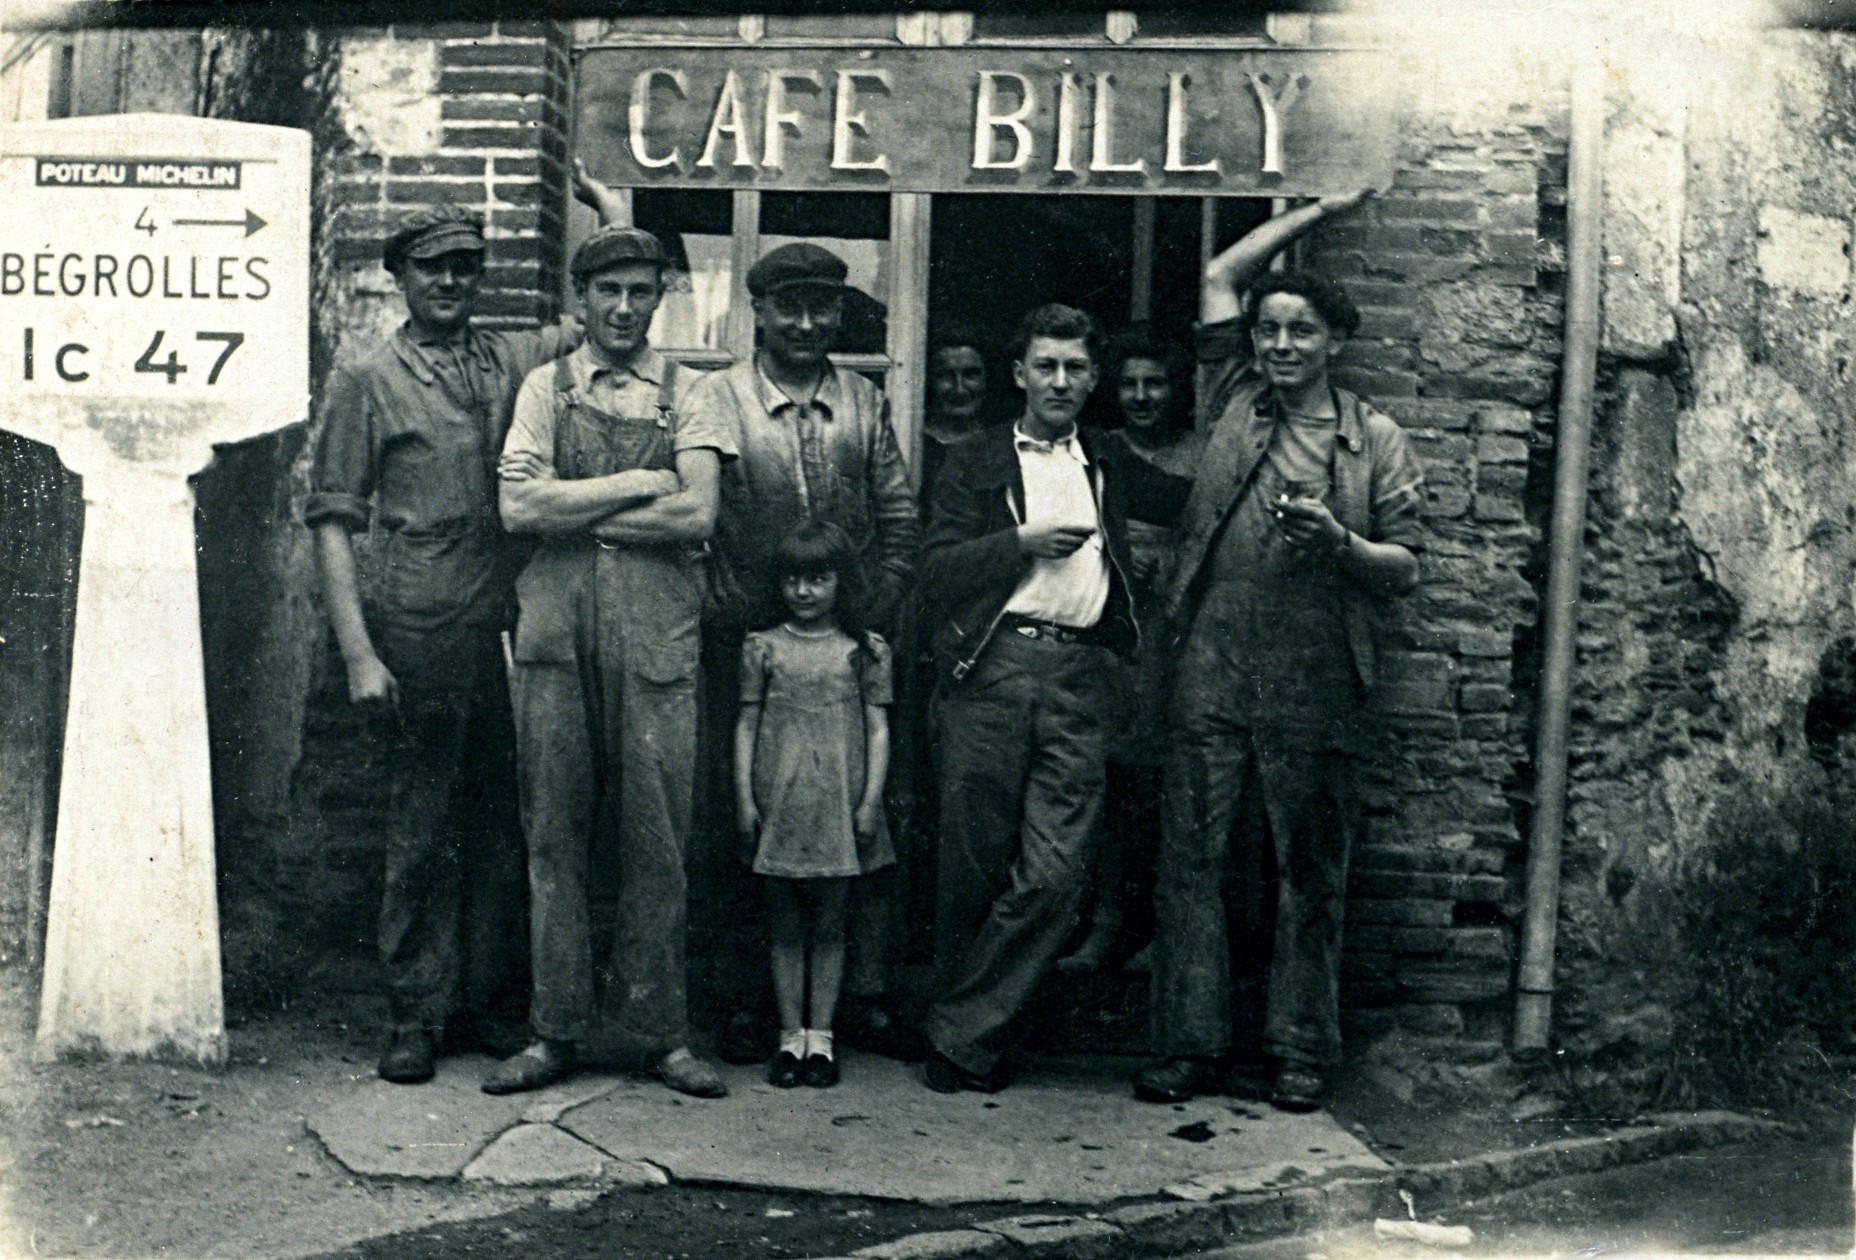 Cafe billy